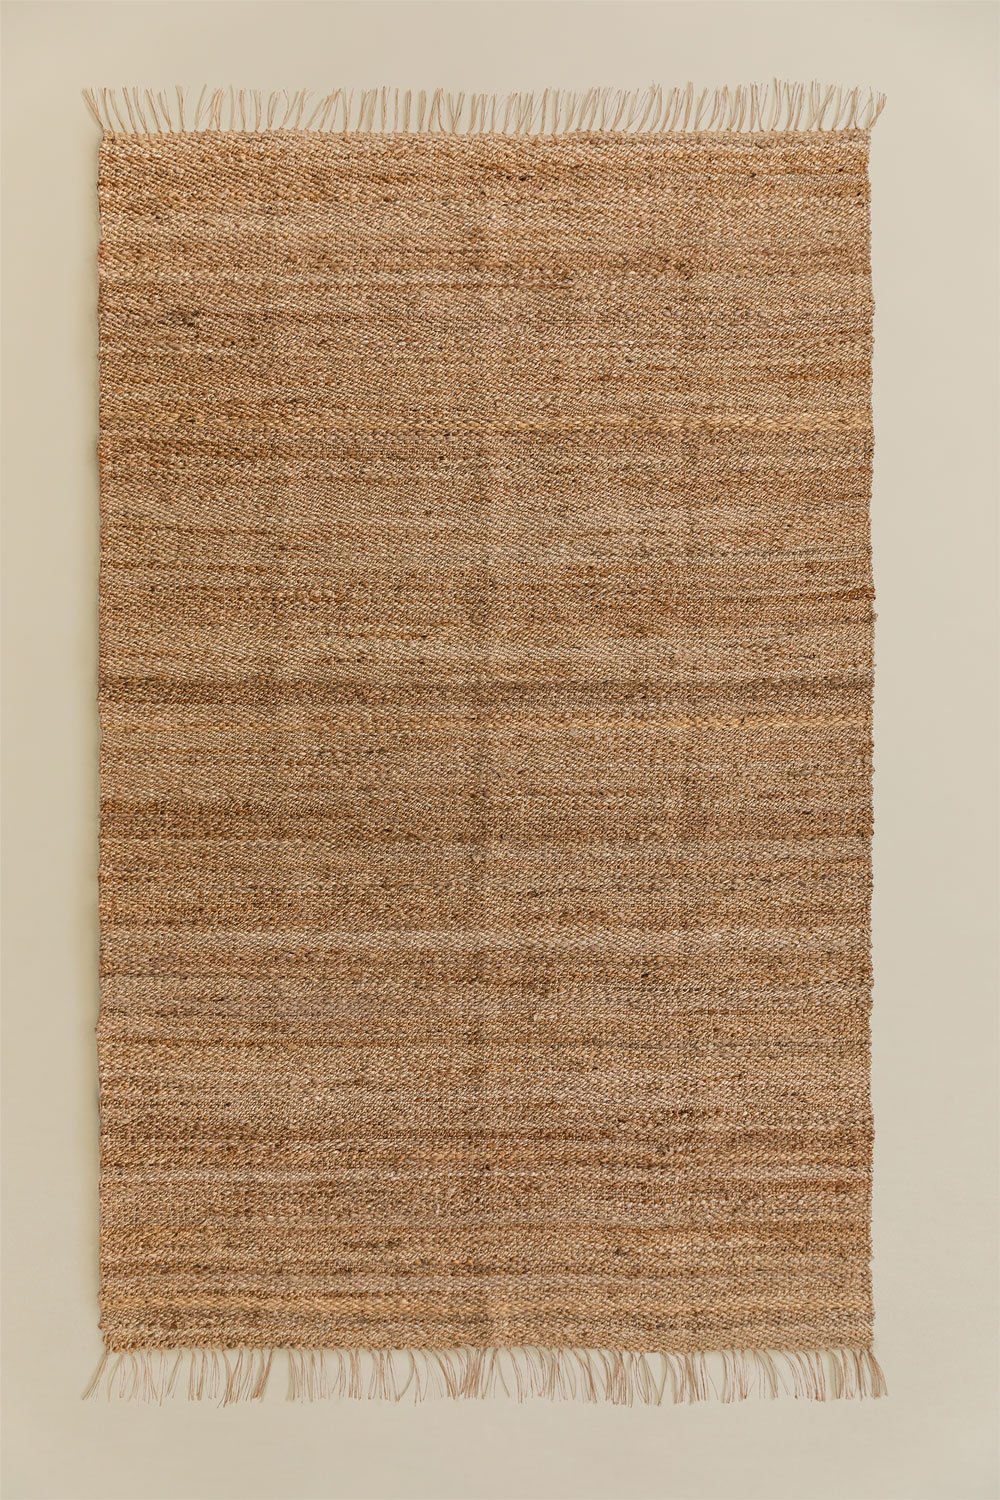 Tappeto in iuta naturale (275x155 cm) Magot, immagine della galleria 1